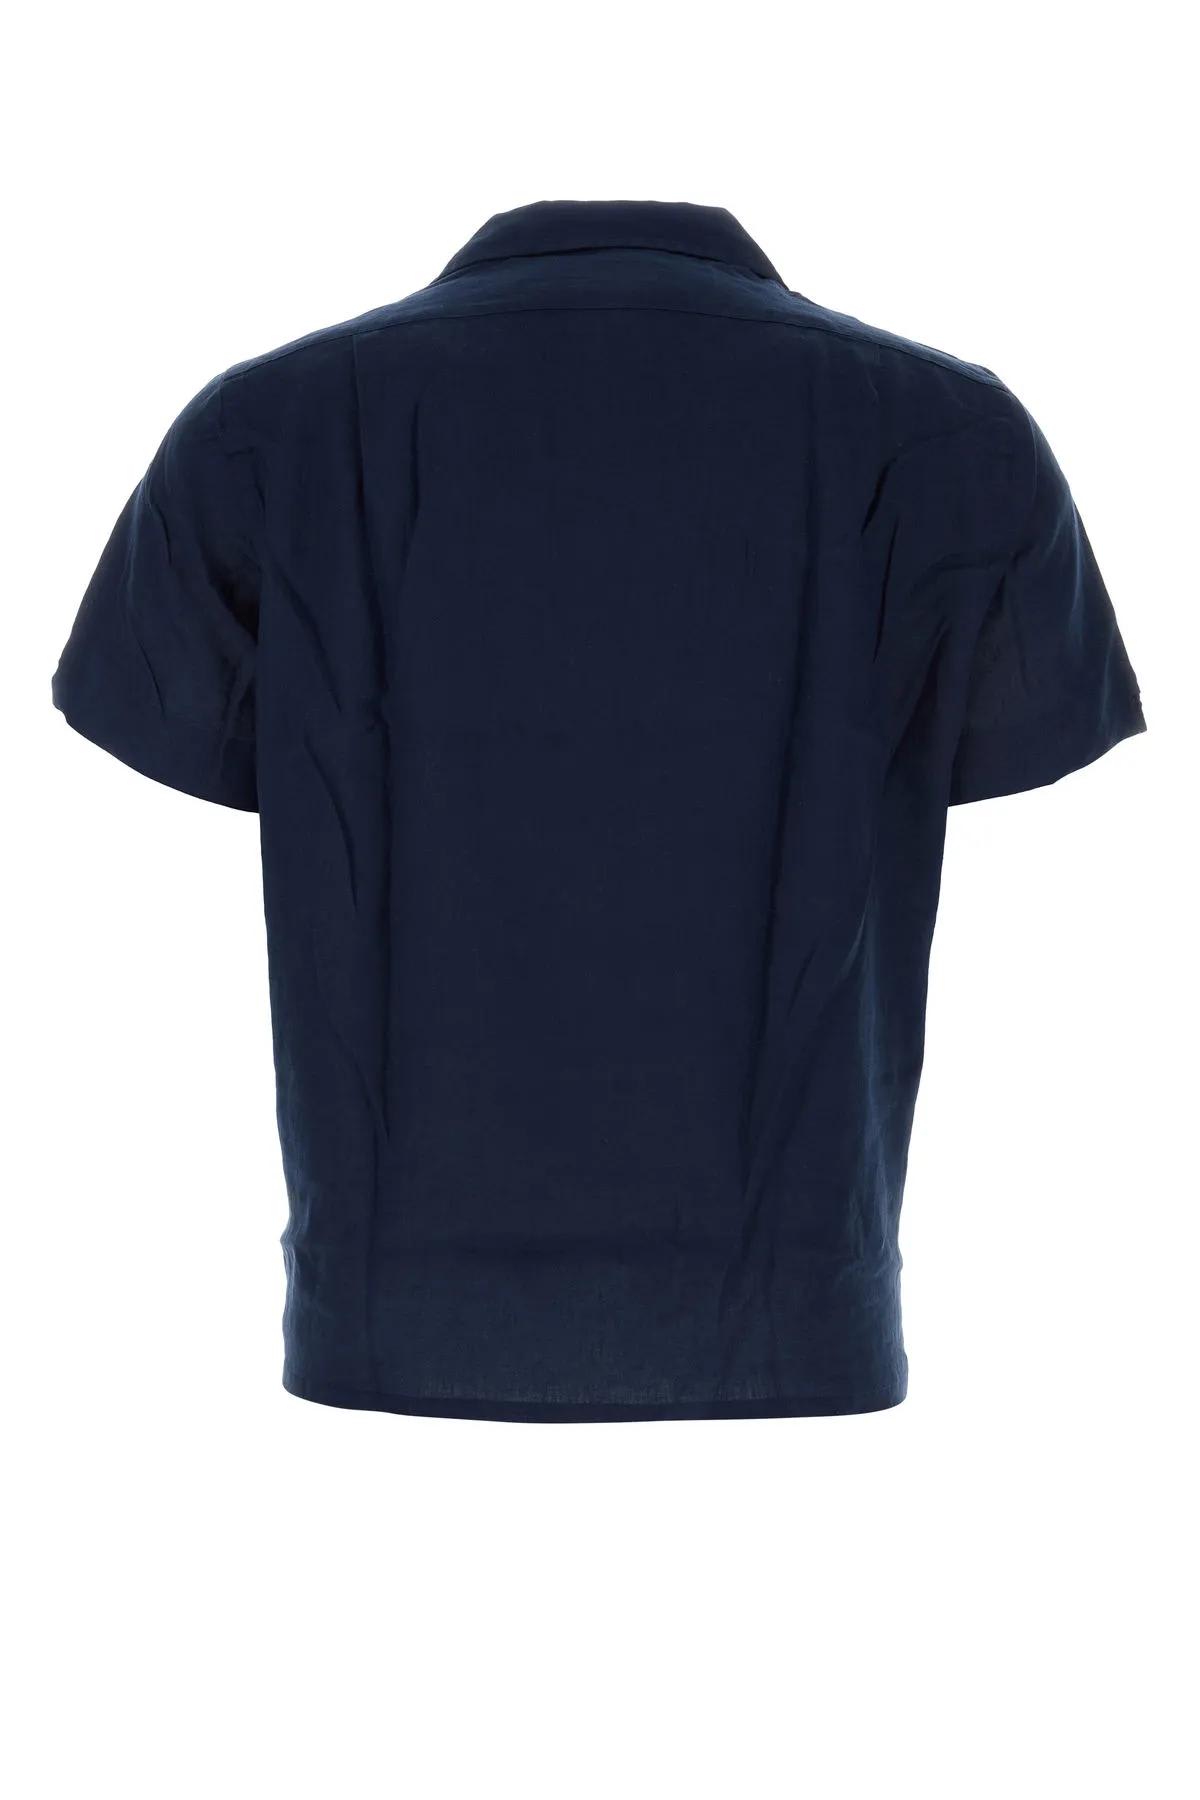 Shop Ralph Lauren Navy Blue Linen Shirt